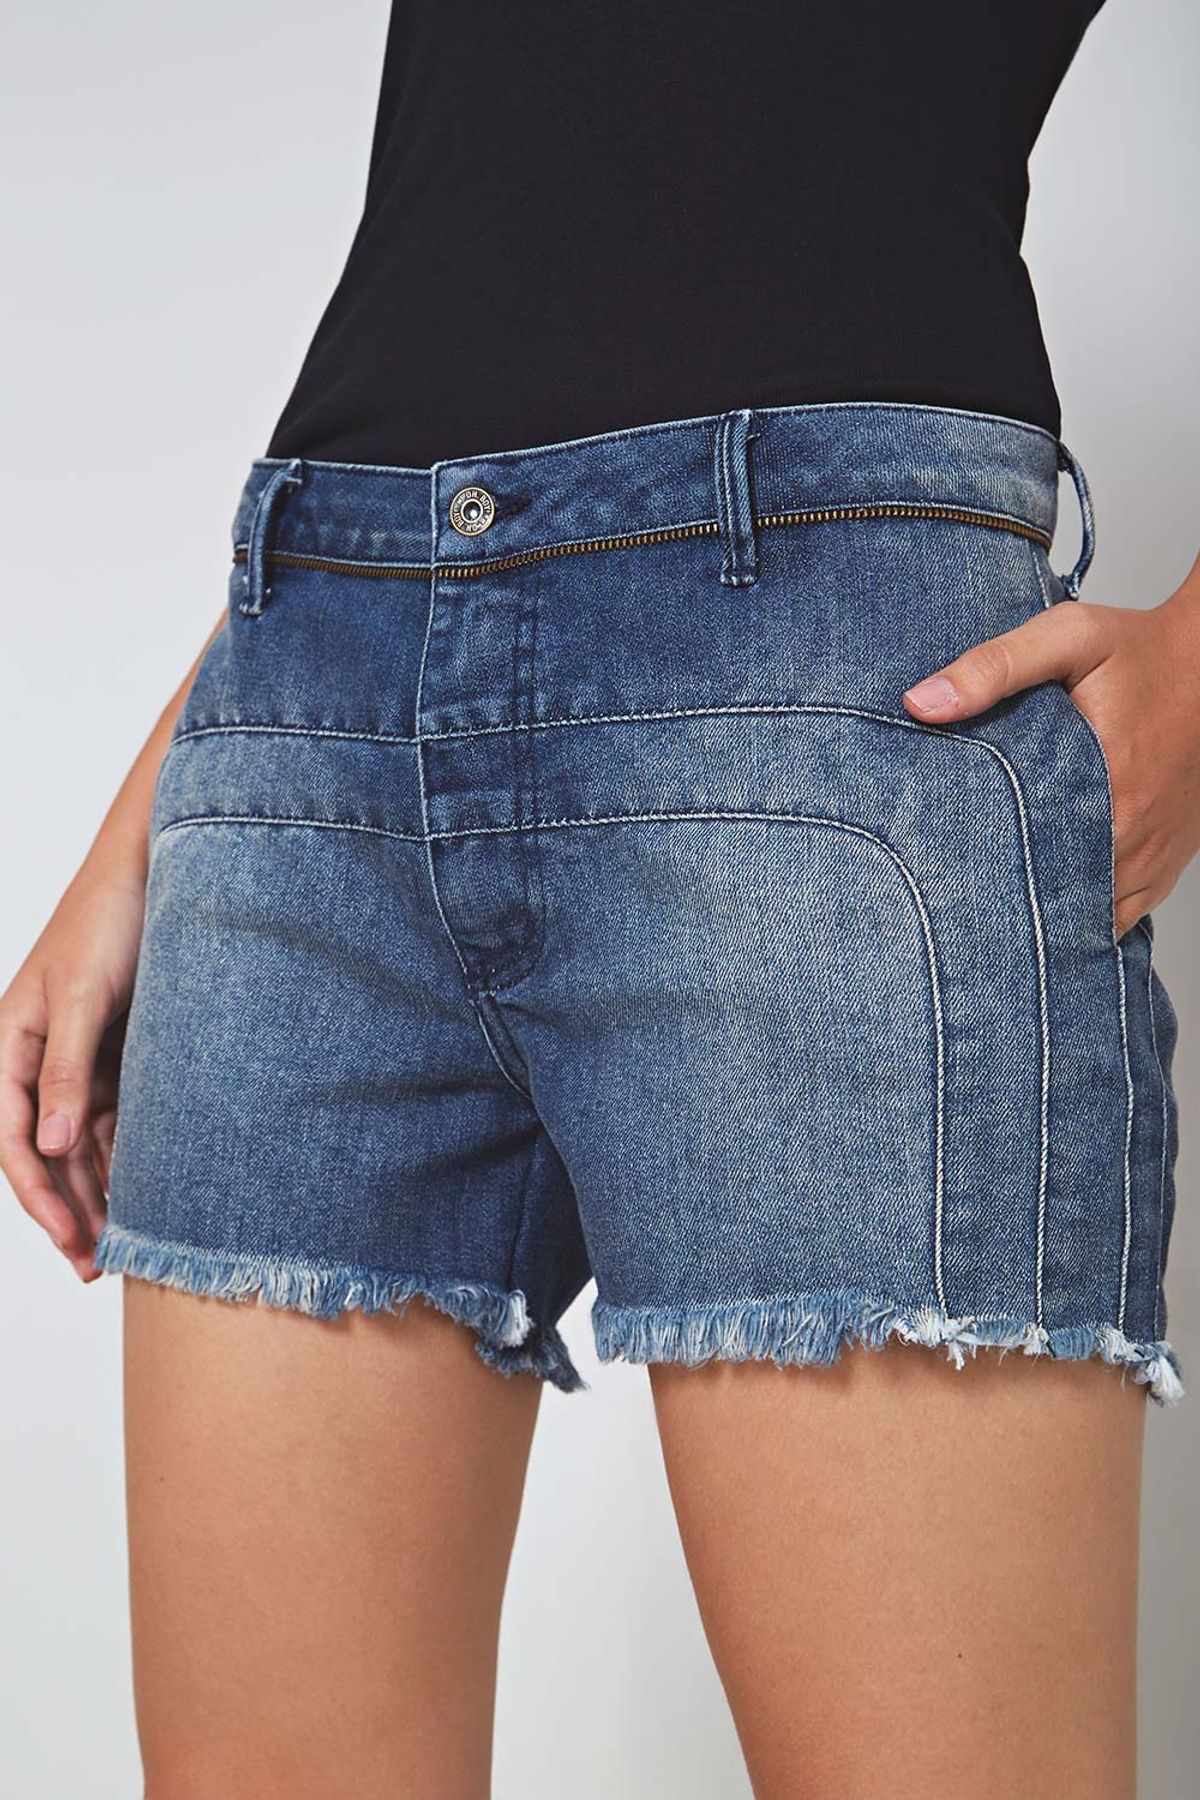 short jeans com ziper